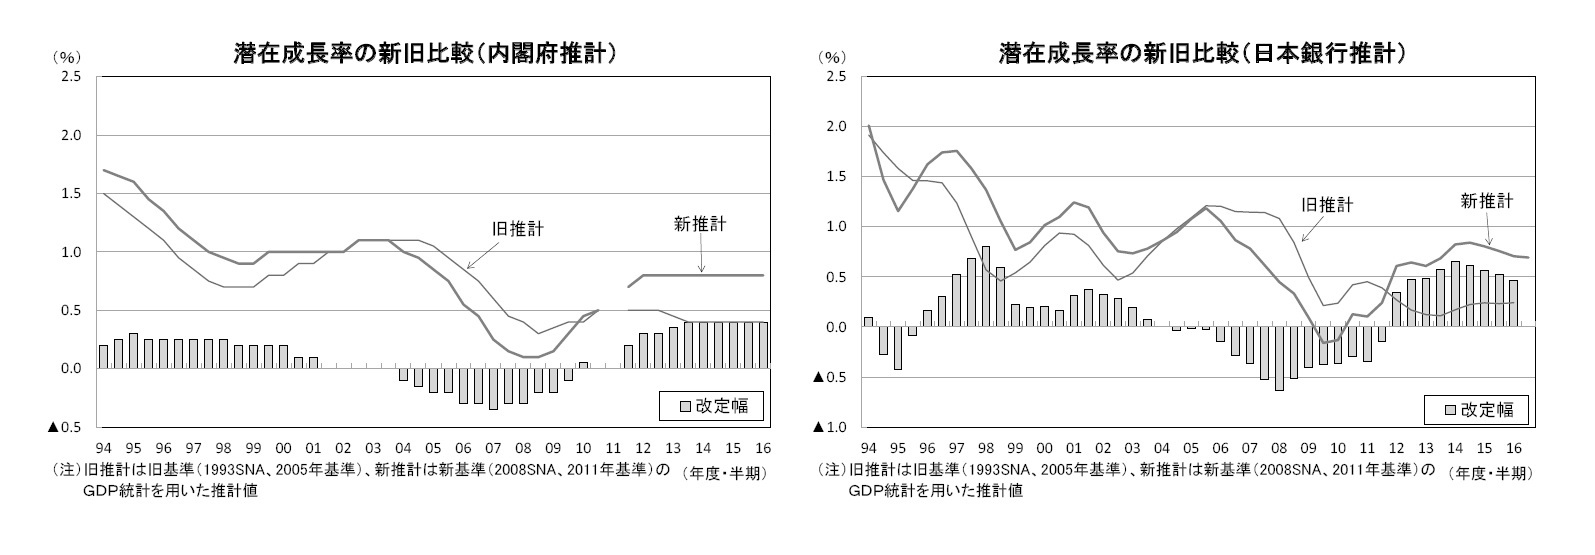 潜在成長率の新旧比較（内閣府推計）/潜在成長率の新旧比較（日本銀行推計）